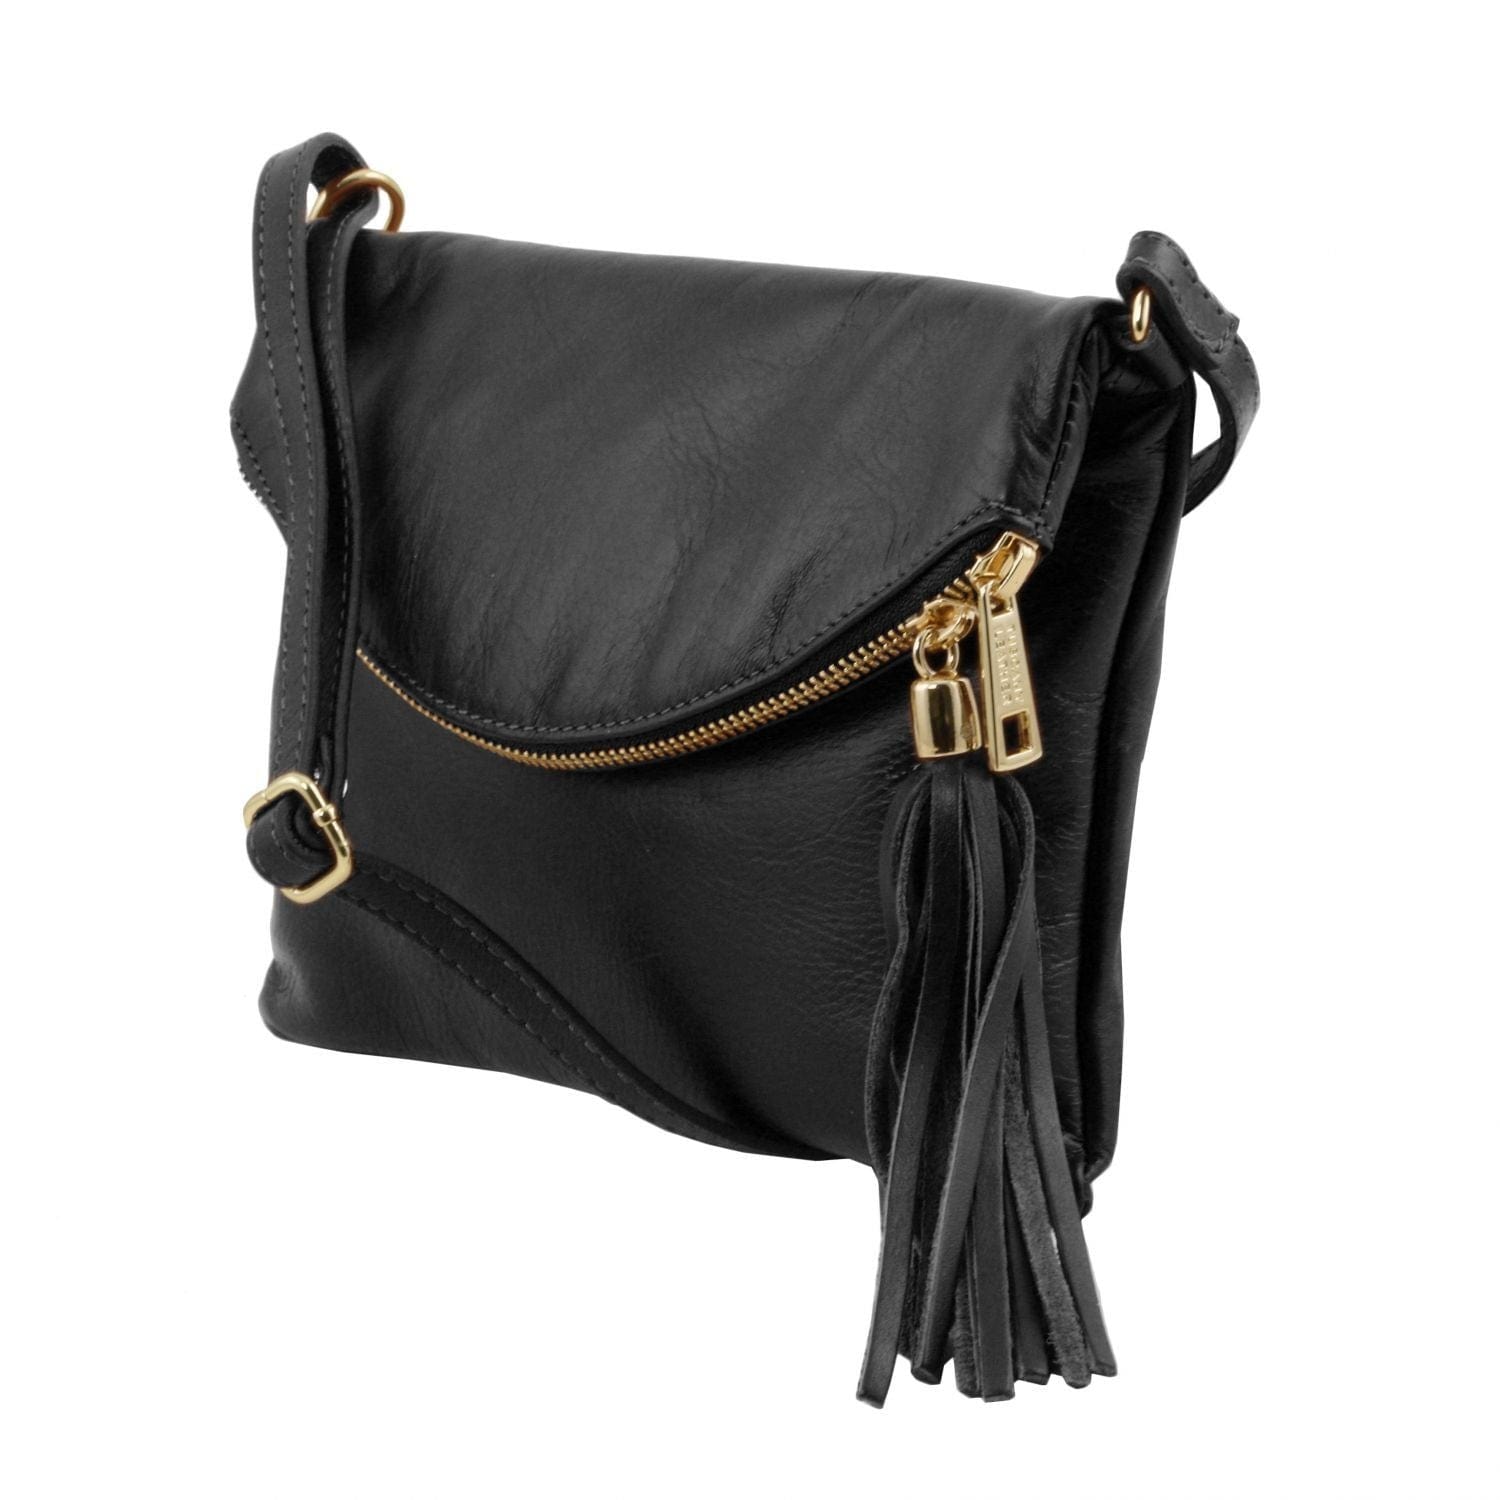 TL Young bag - Shoulder bag with tassel detail, TL141153 - Foldover  Crossbody Bag